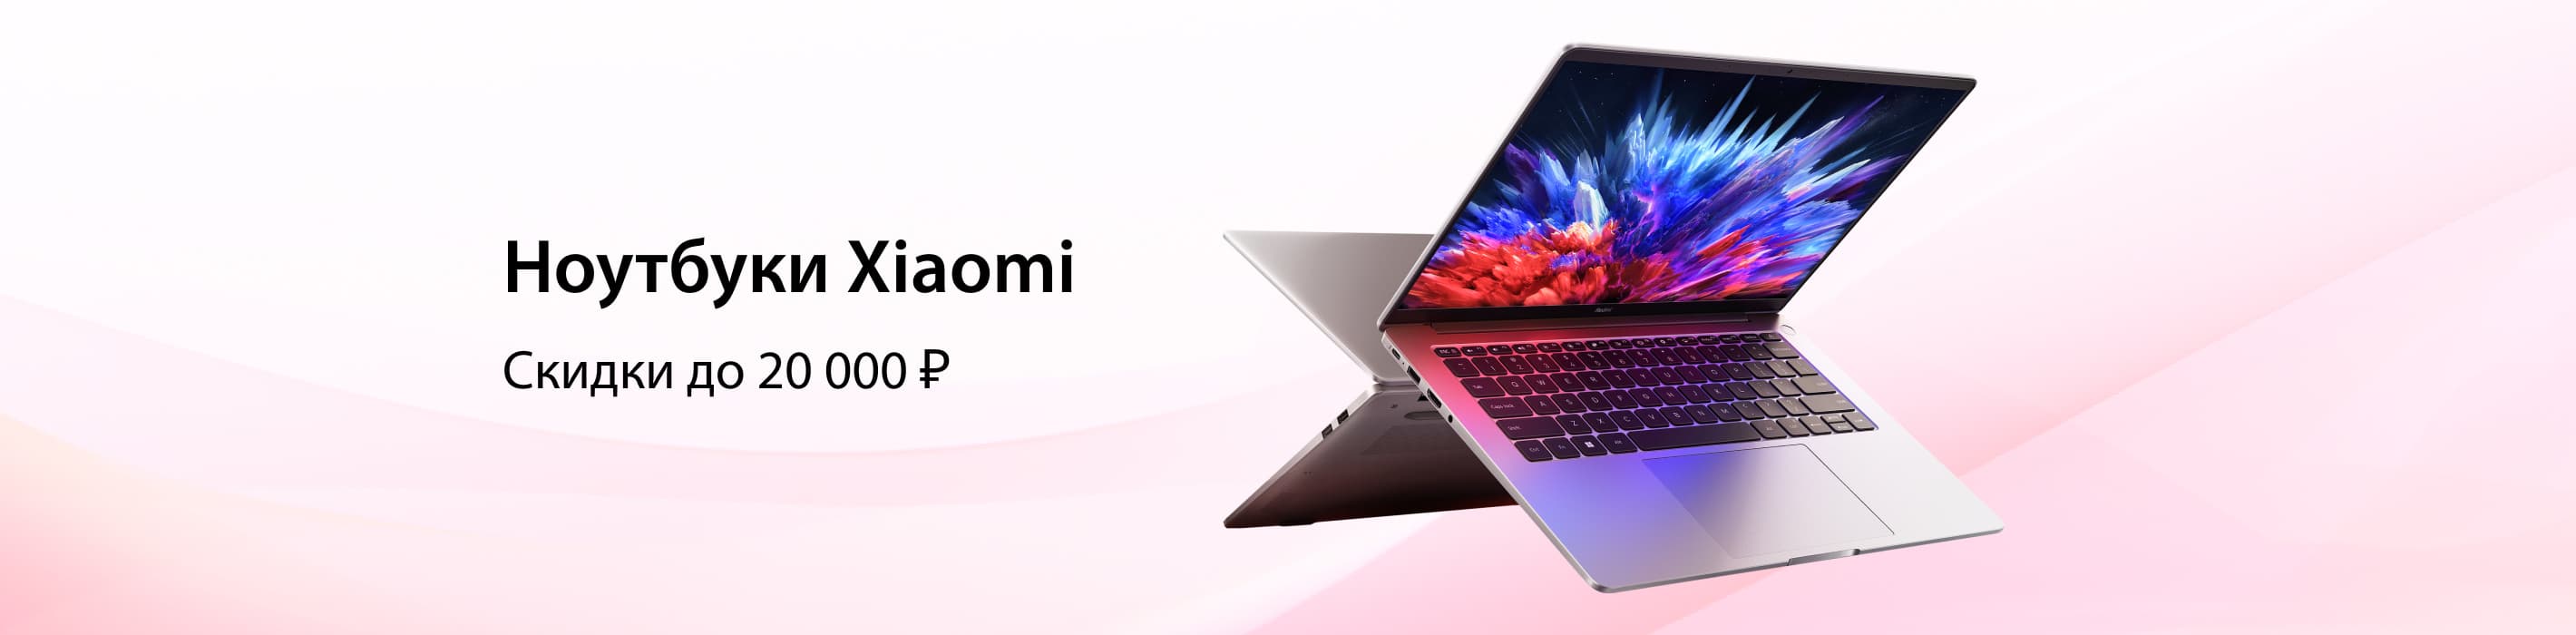 Ноутбуки Xiaomi по выгодной цене